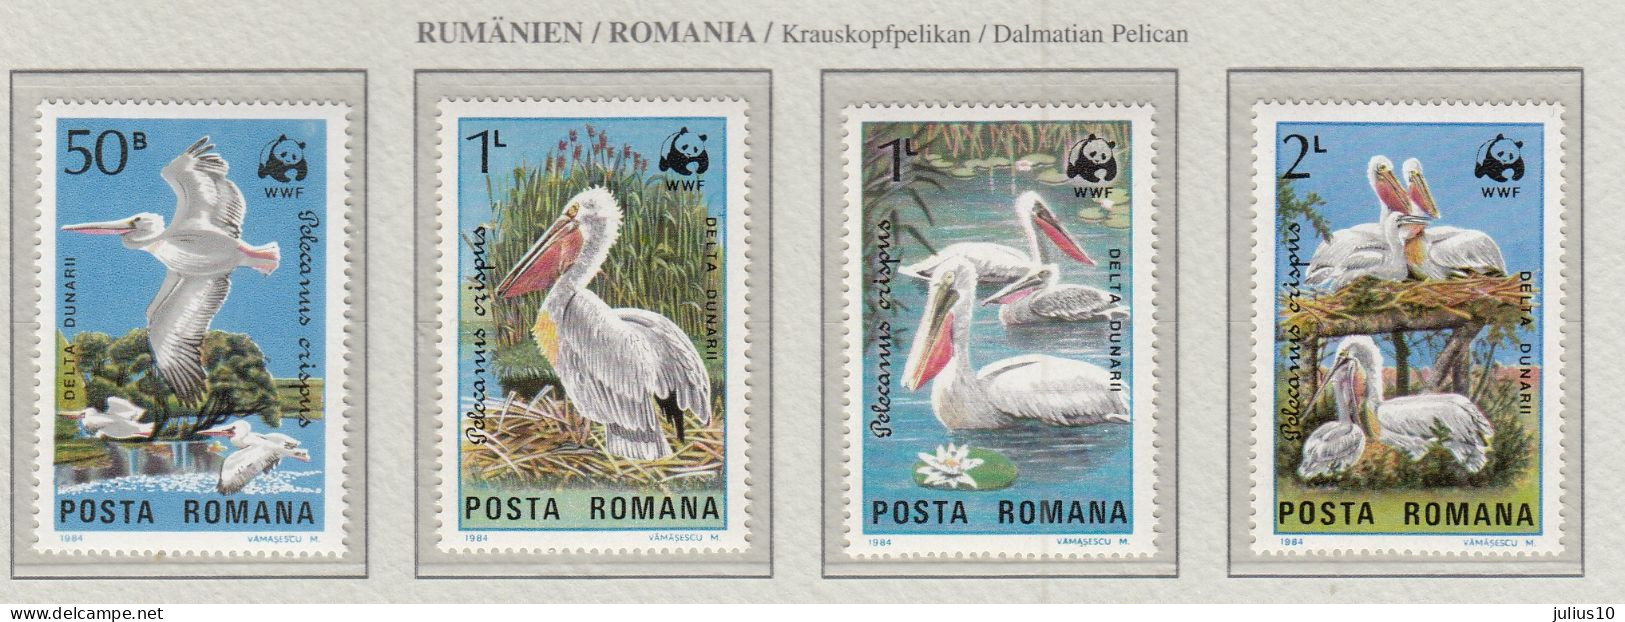 ROMANIA 1984 WWF Birds Pelicans Mi 4104-4107 MNH(**) Fauna 693 - Pelícanos